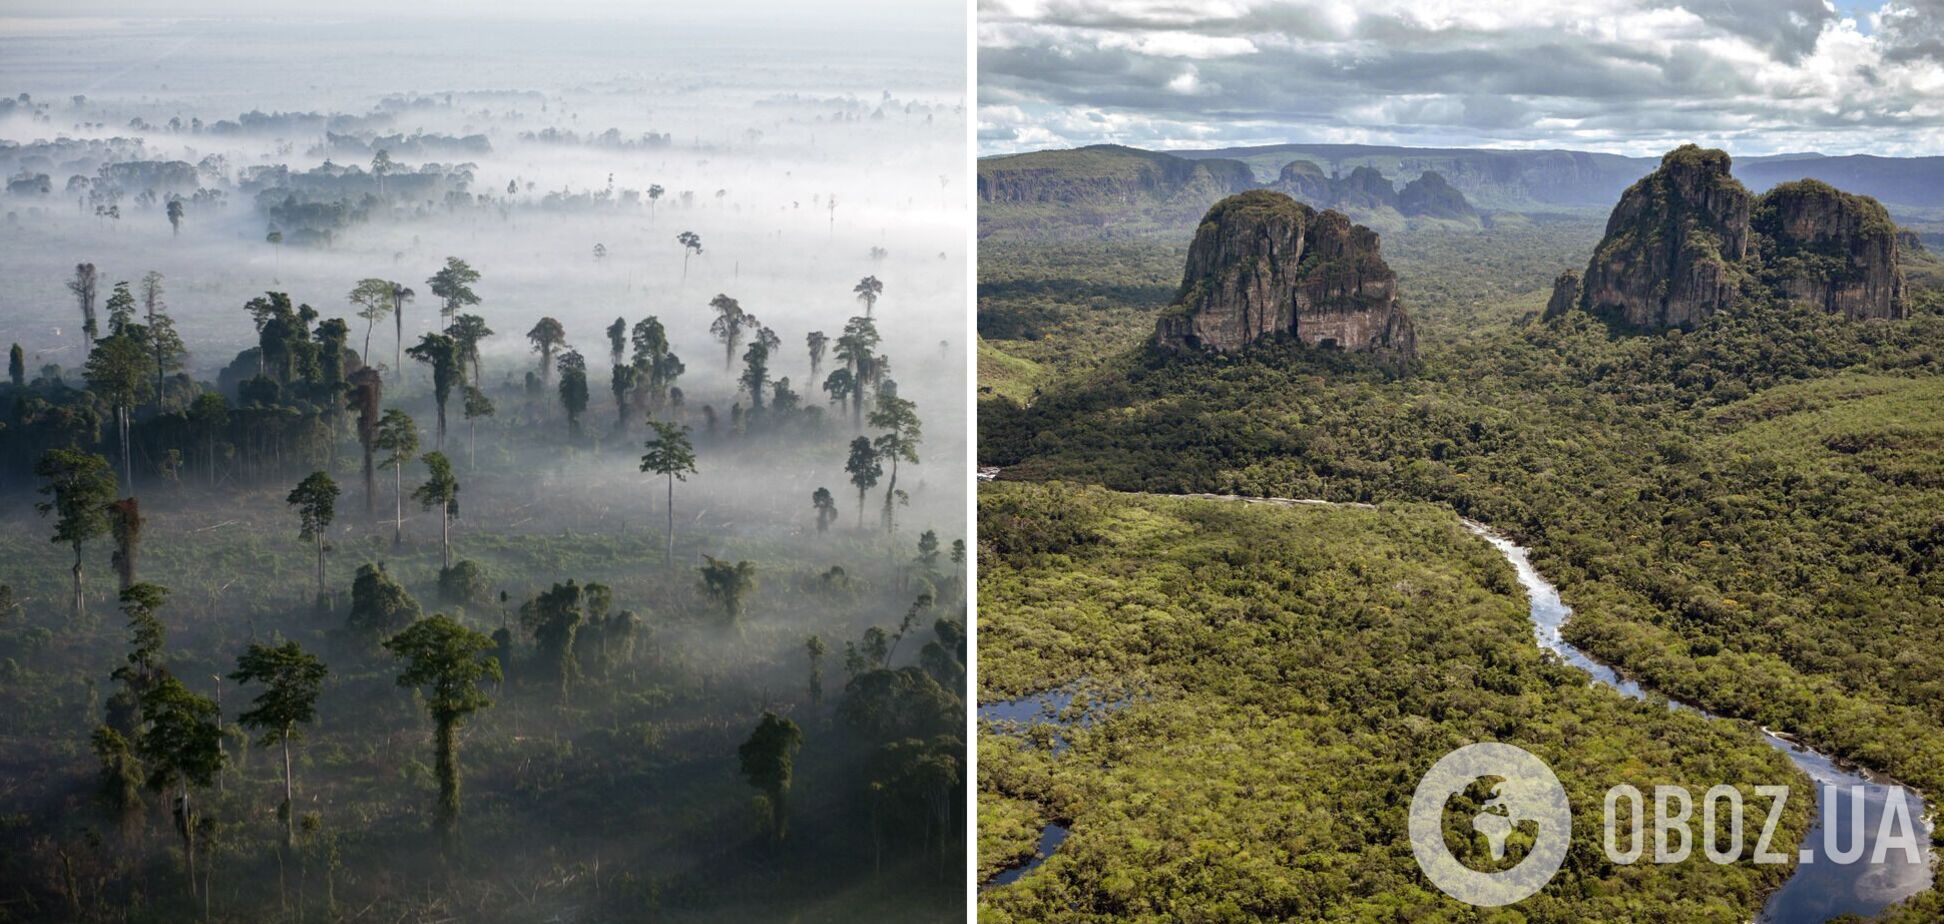 Катастрофа для Земли: ученые предупредили об угрозе полной гибели тропических лесов